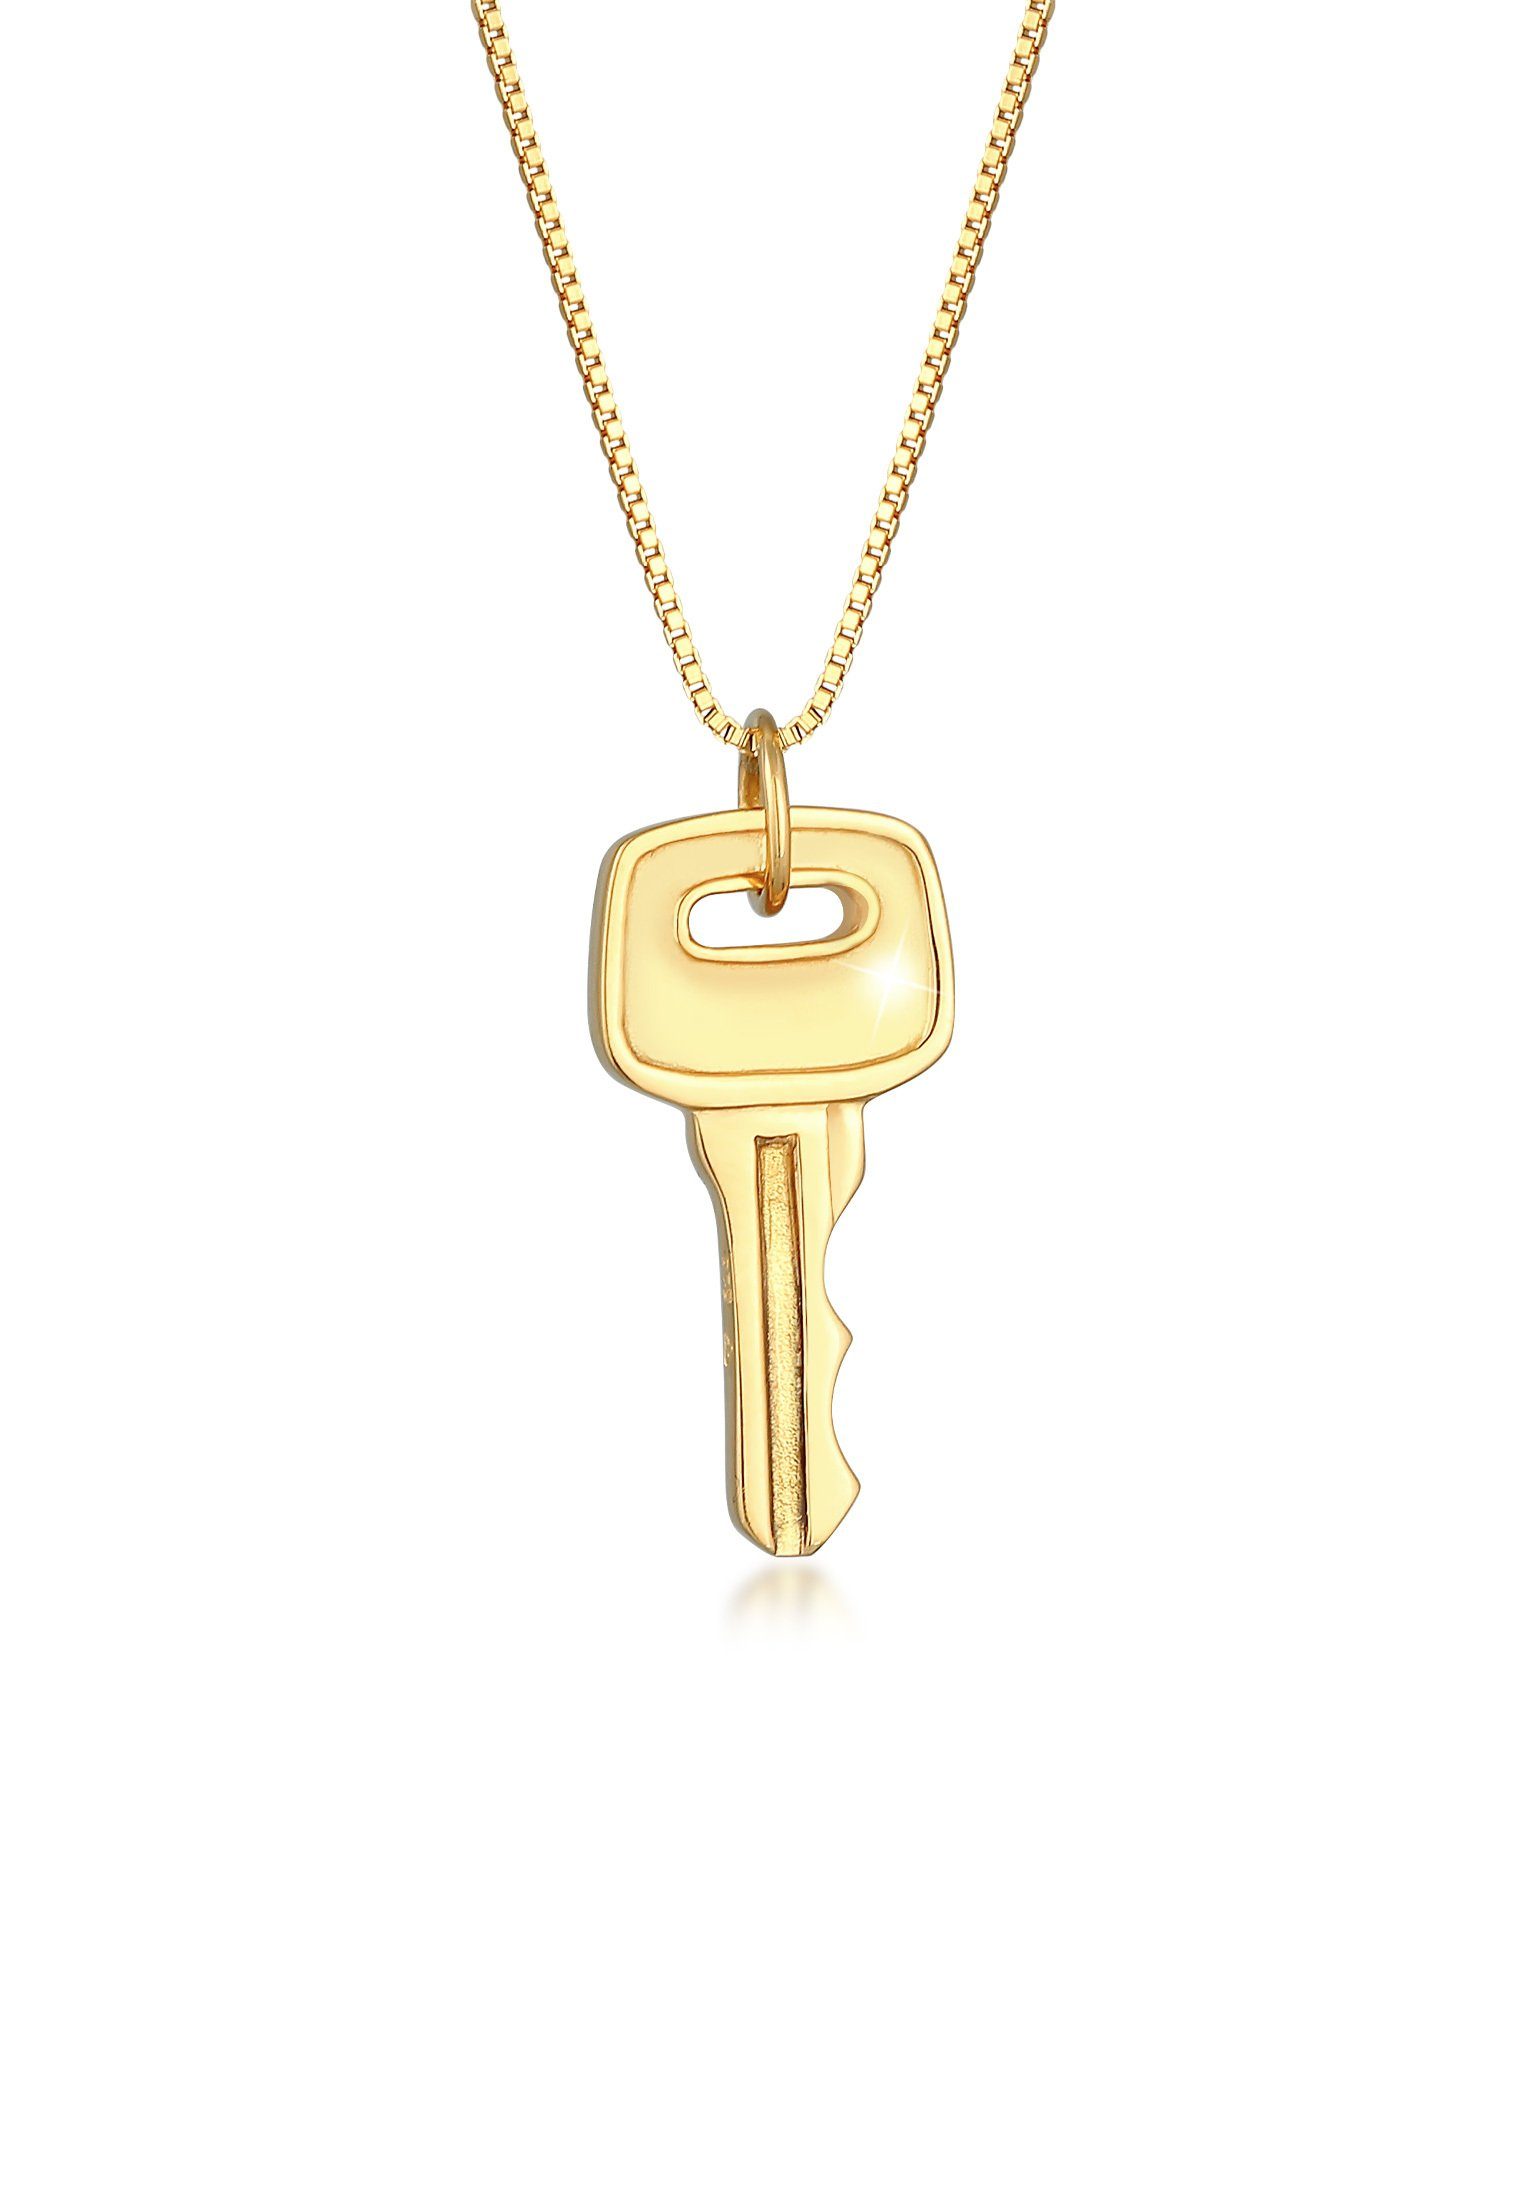 Kuzzoi Kette mit Anhänger Herren Venezianer Schlüssel Key 925 Silber Gold